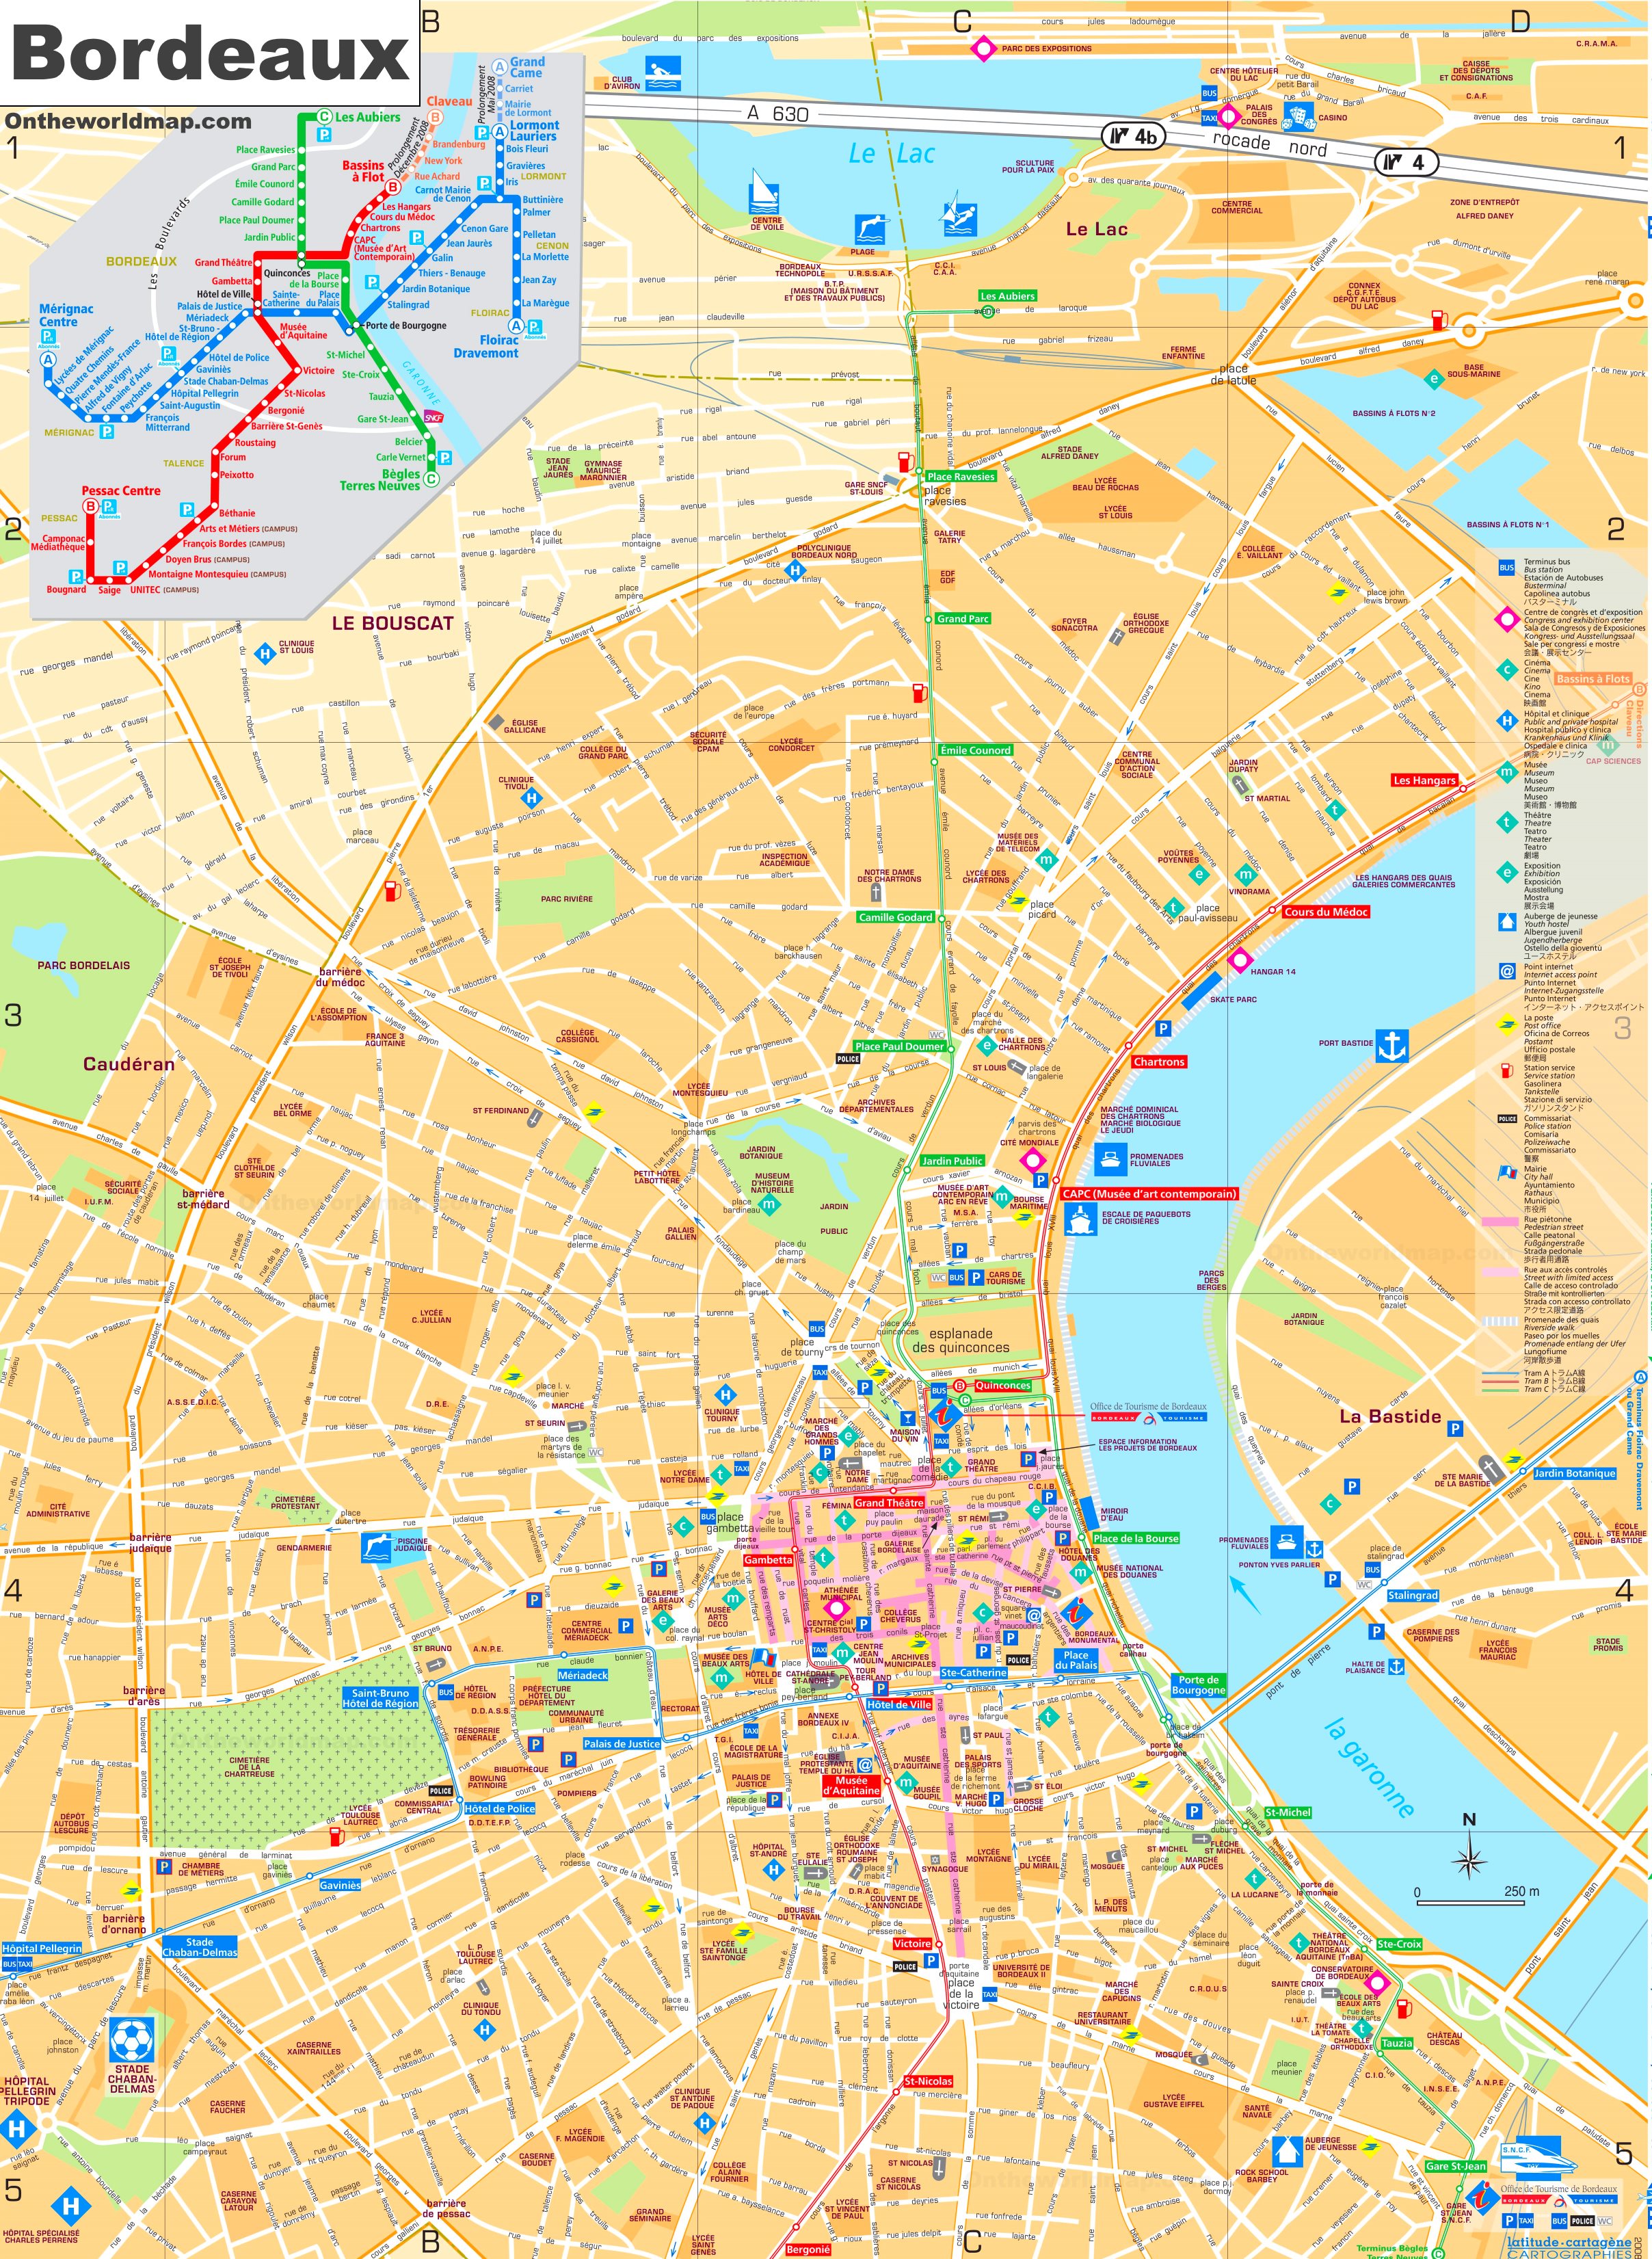 bordeaux-tourist-map.jpg